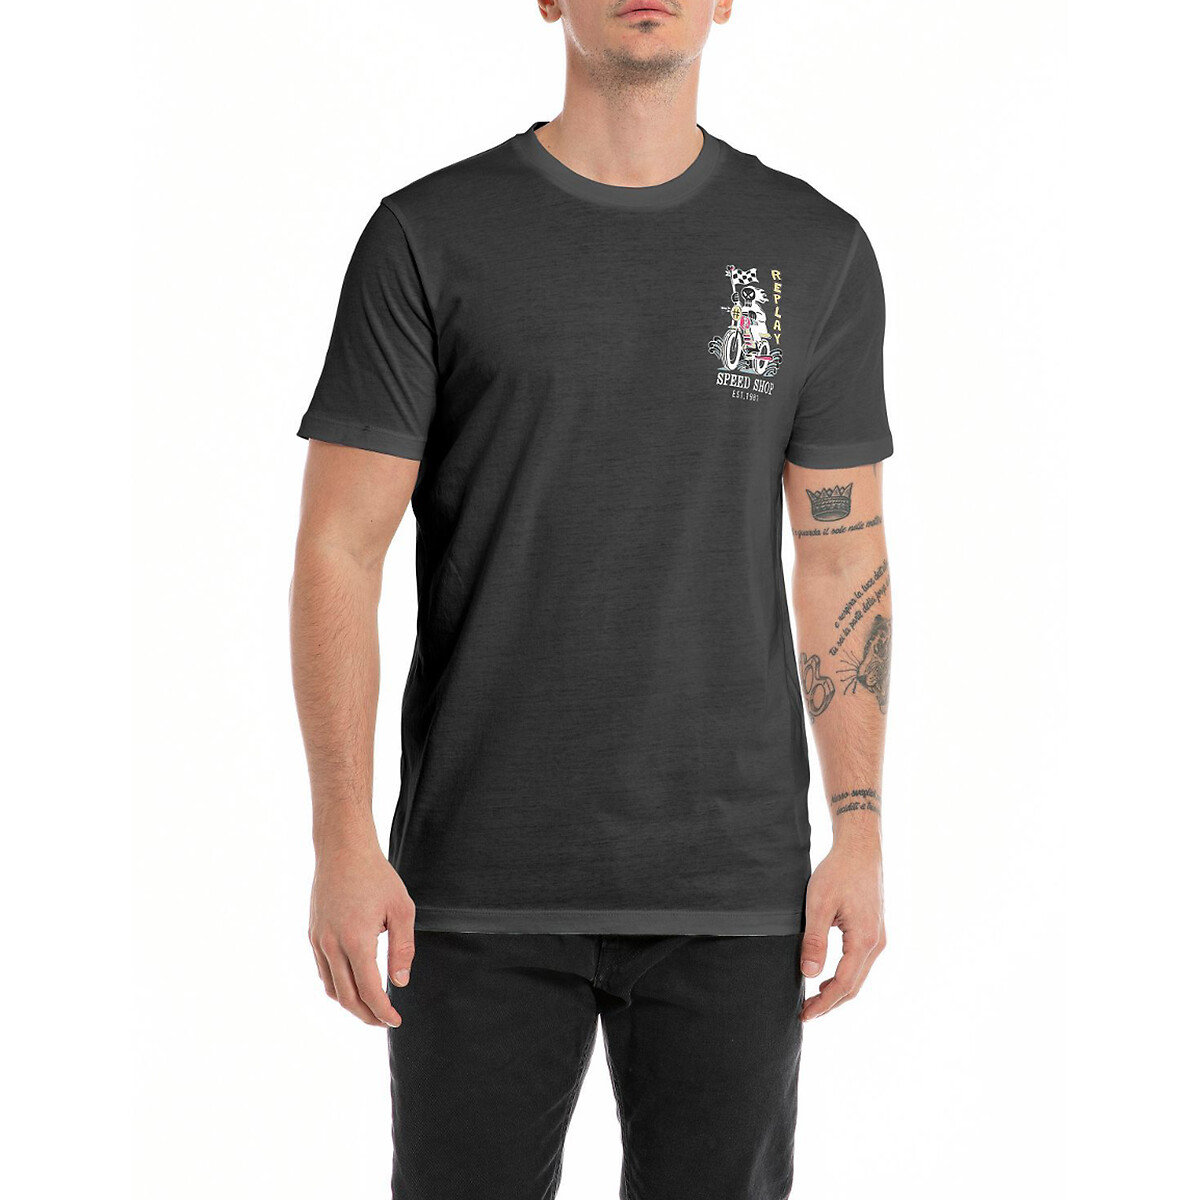 La mit vorne | Redoute Replay hinten, regular-fit und schwarz logoprints T-shirt